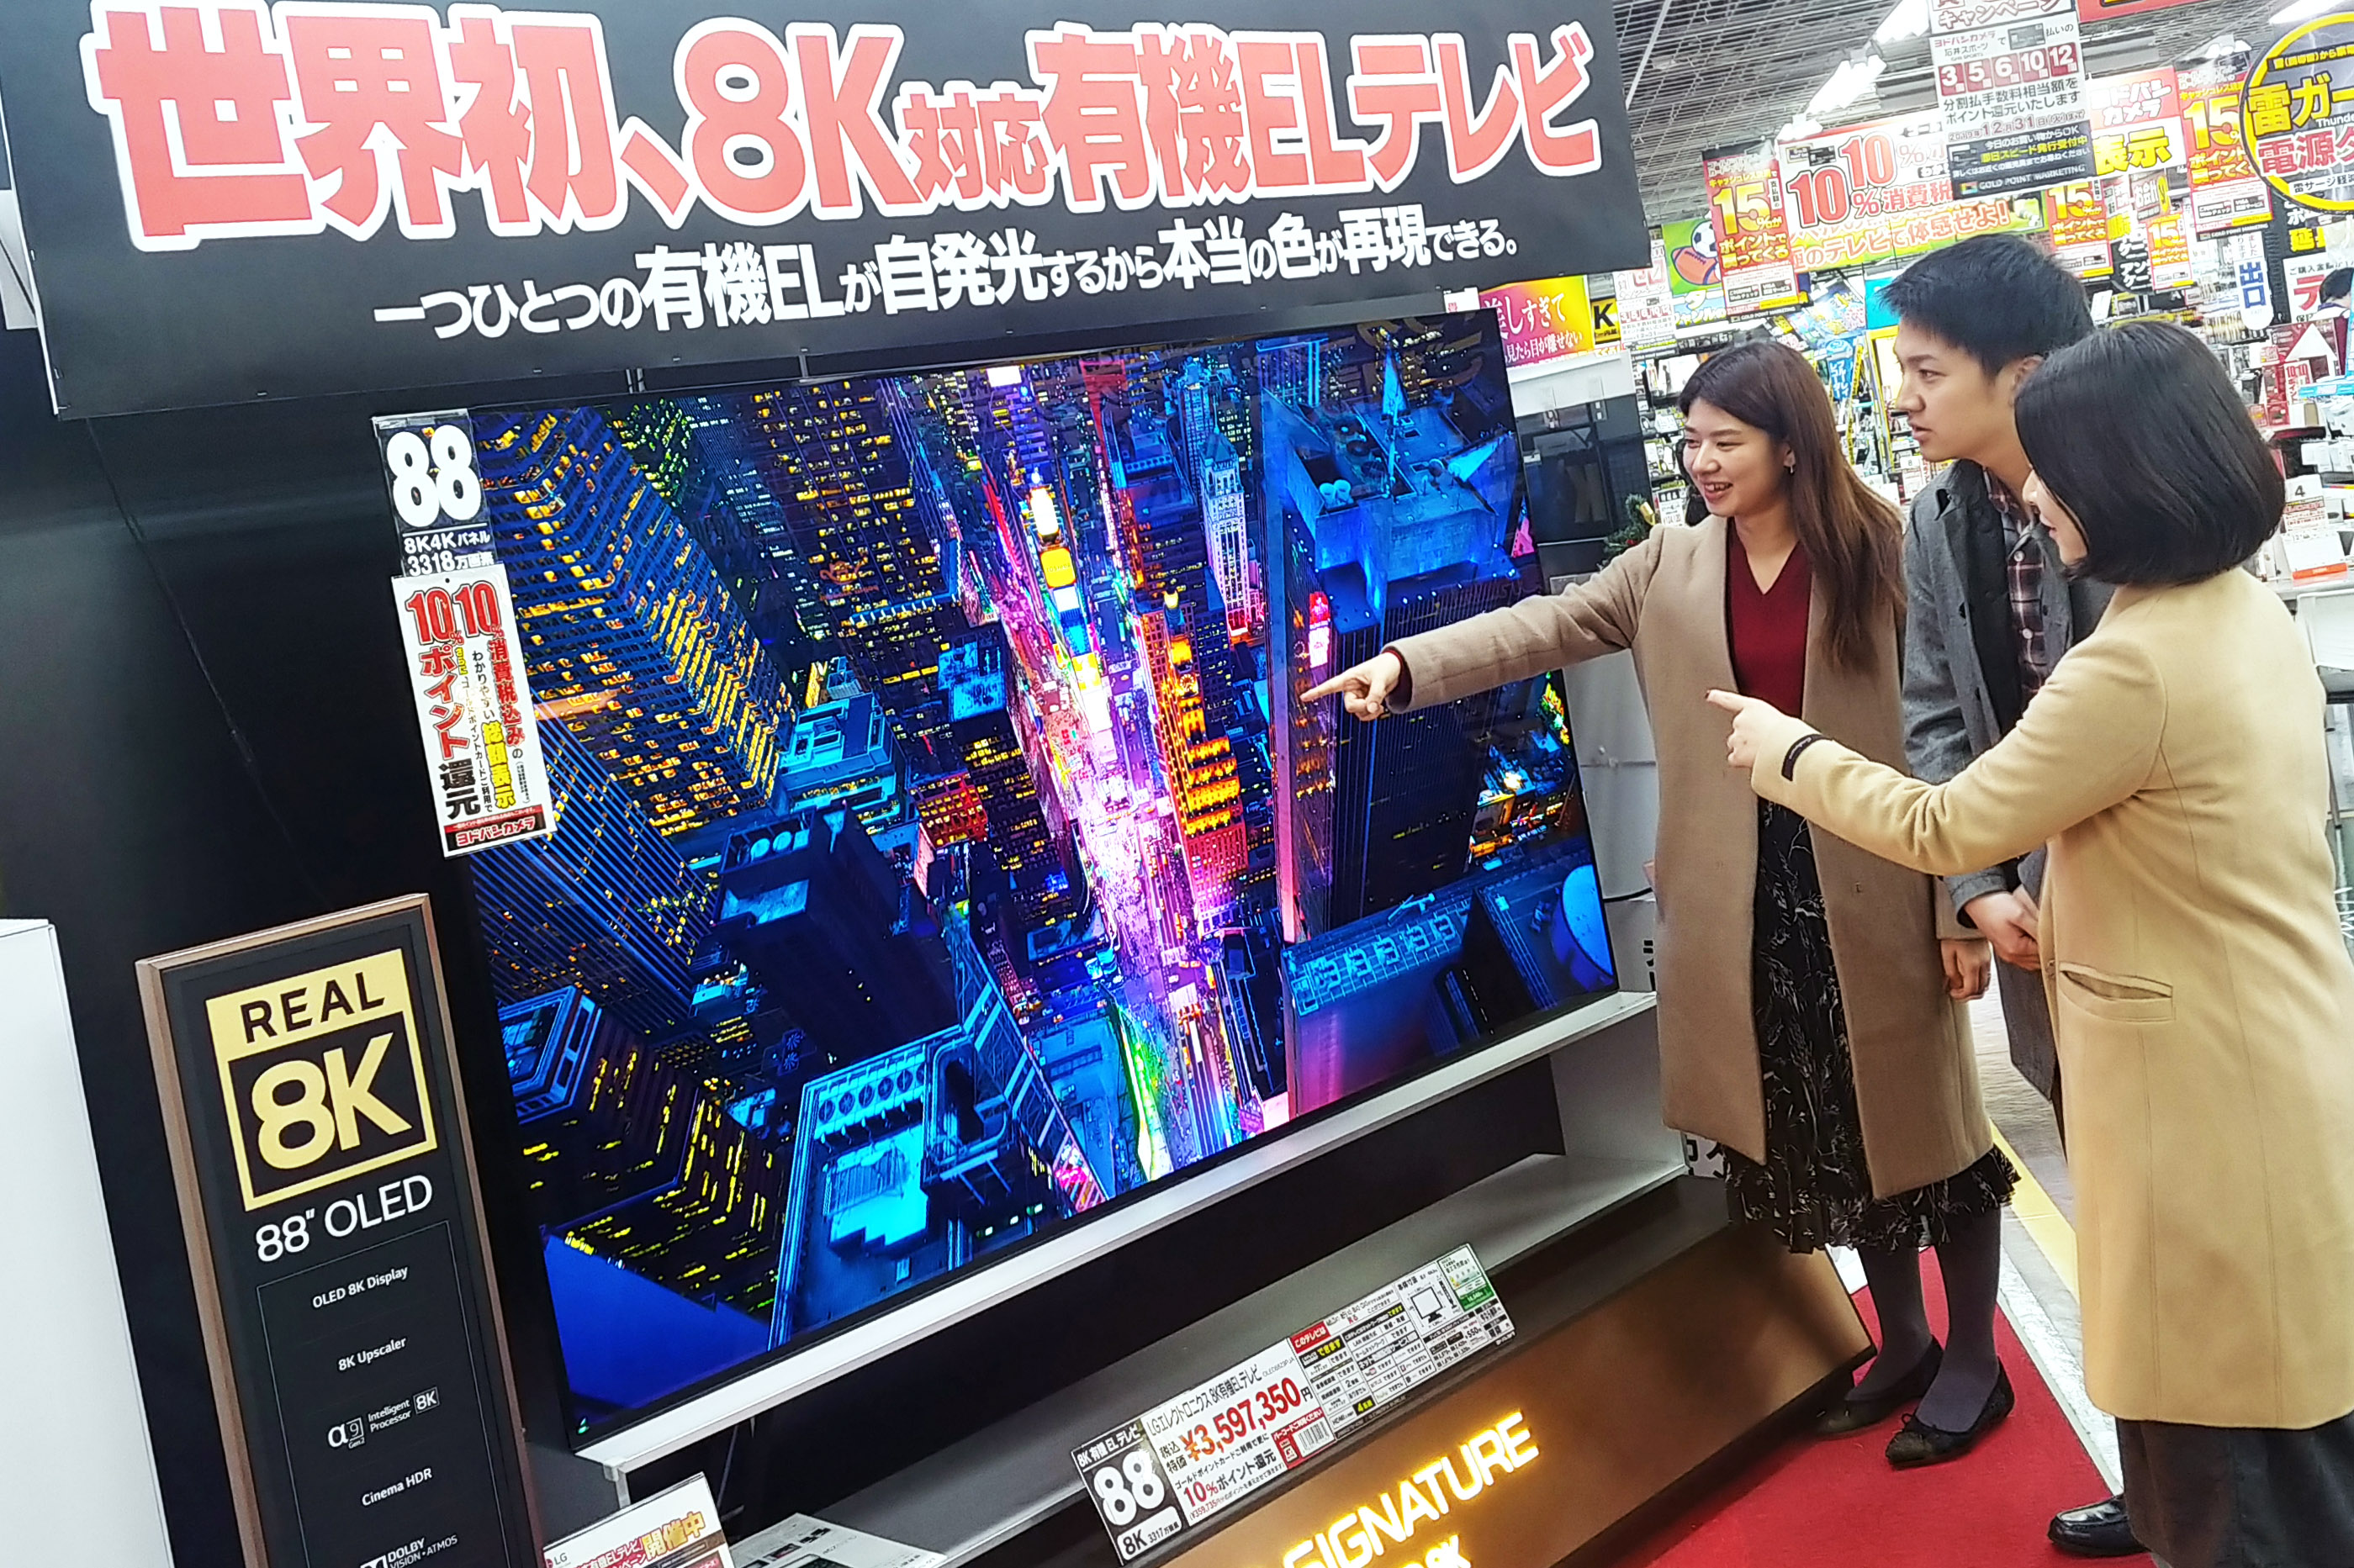  일본 도쿄 아키바에 위치한 요도바시카메라 매장에서 고객들이 'LG 시그니처 올레드 8K'의 선명한 8K 해상도를 체험하고 있다.